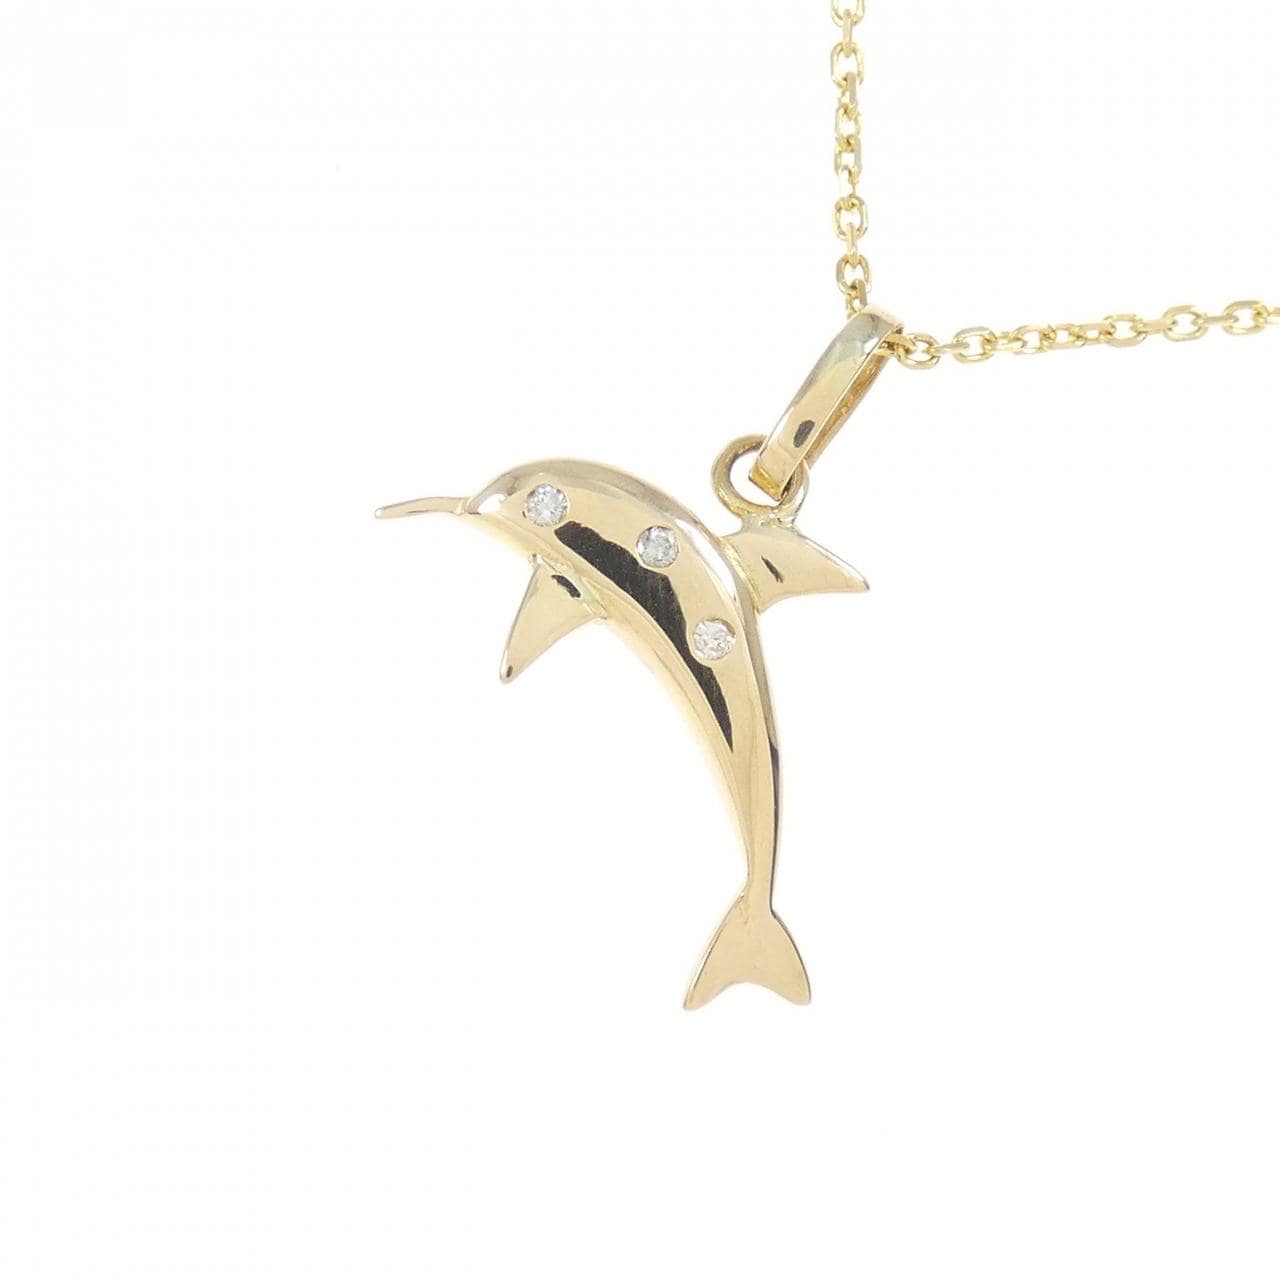 K18YG 海豚钻石项链